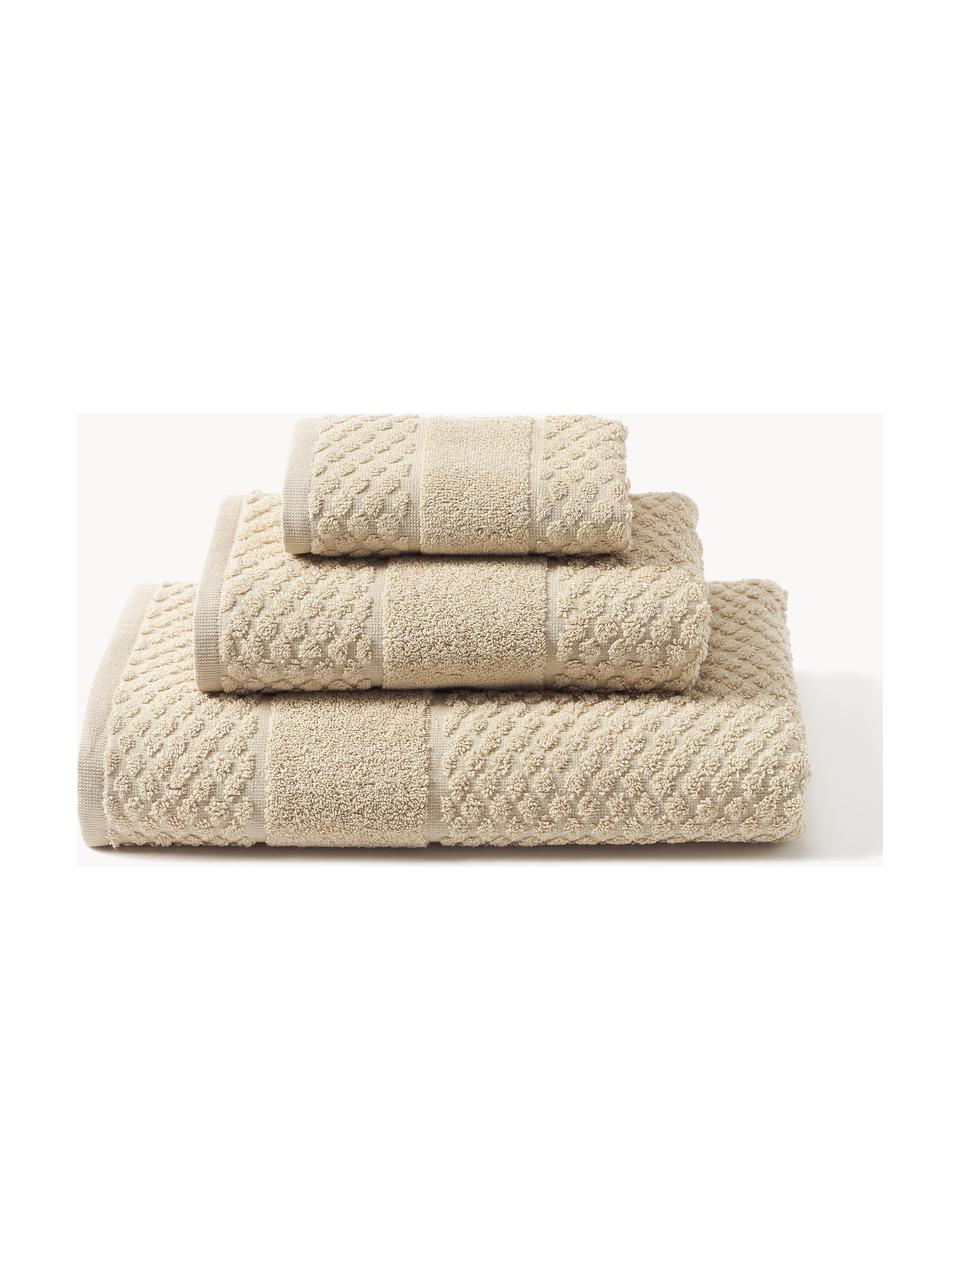 Komplet ręczników Katharina, różne rozmiary, Beżowy, Komplet z różnymi rozmiarami